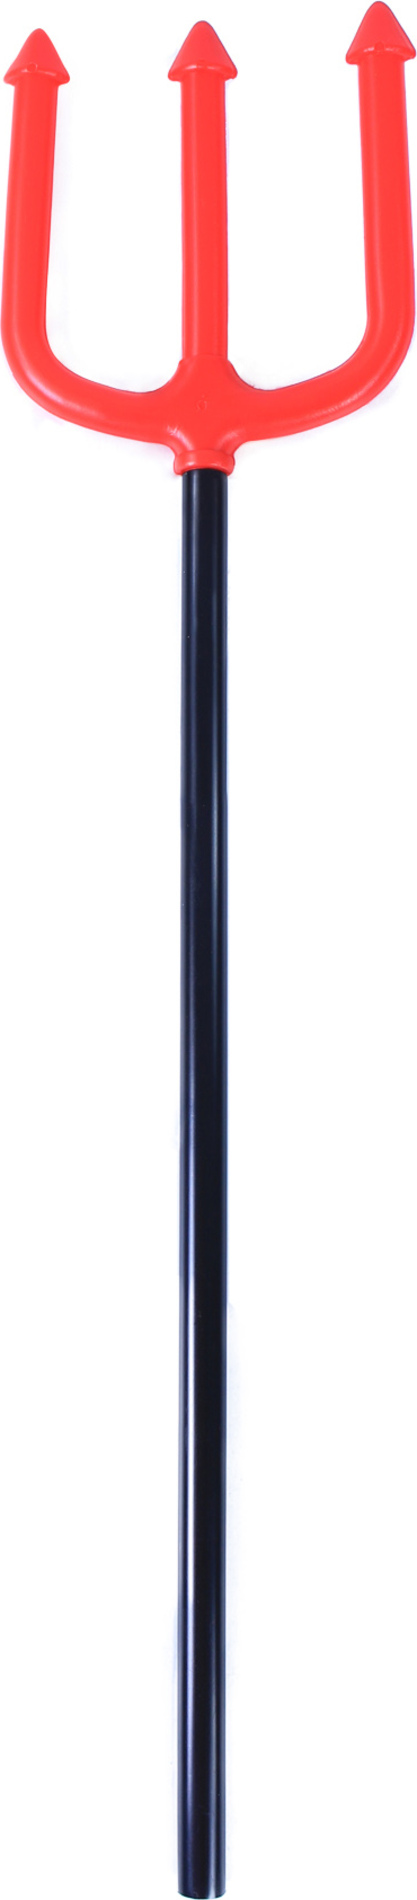 Čertovské vidle, 52 cm